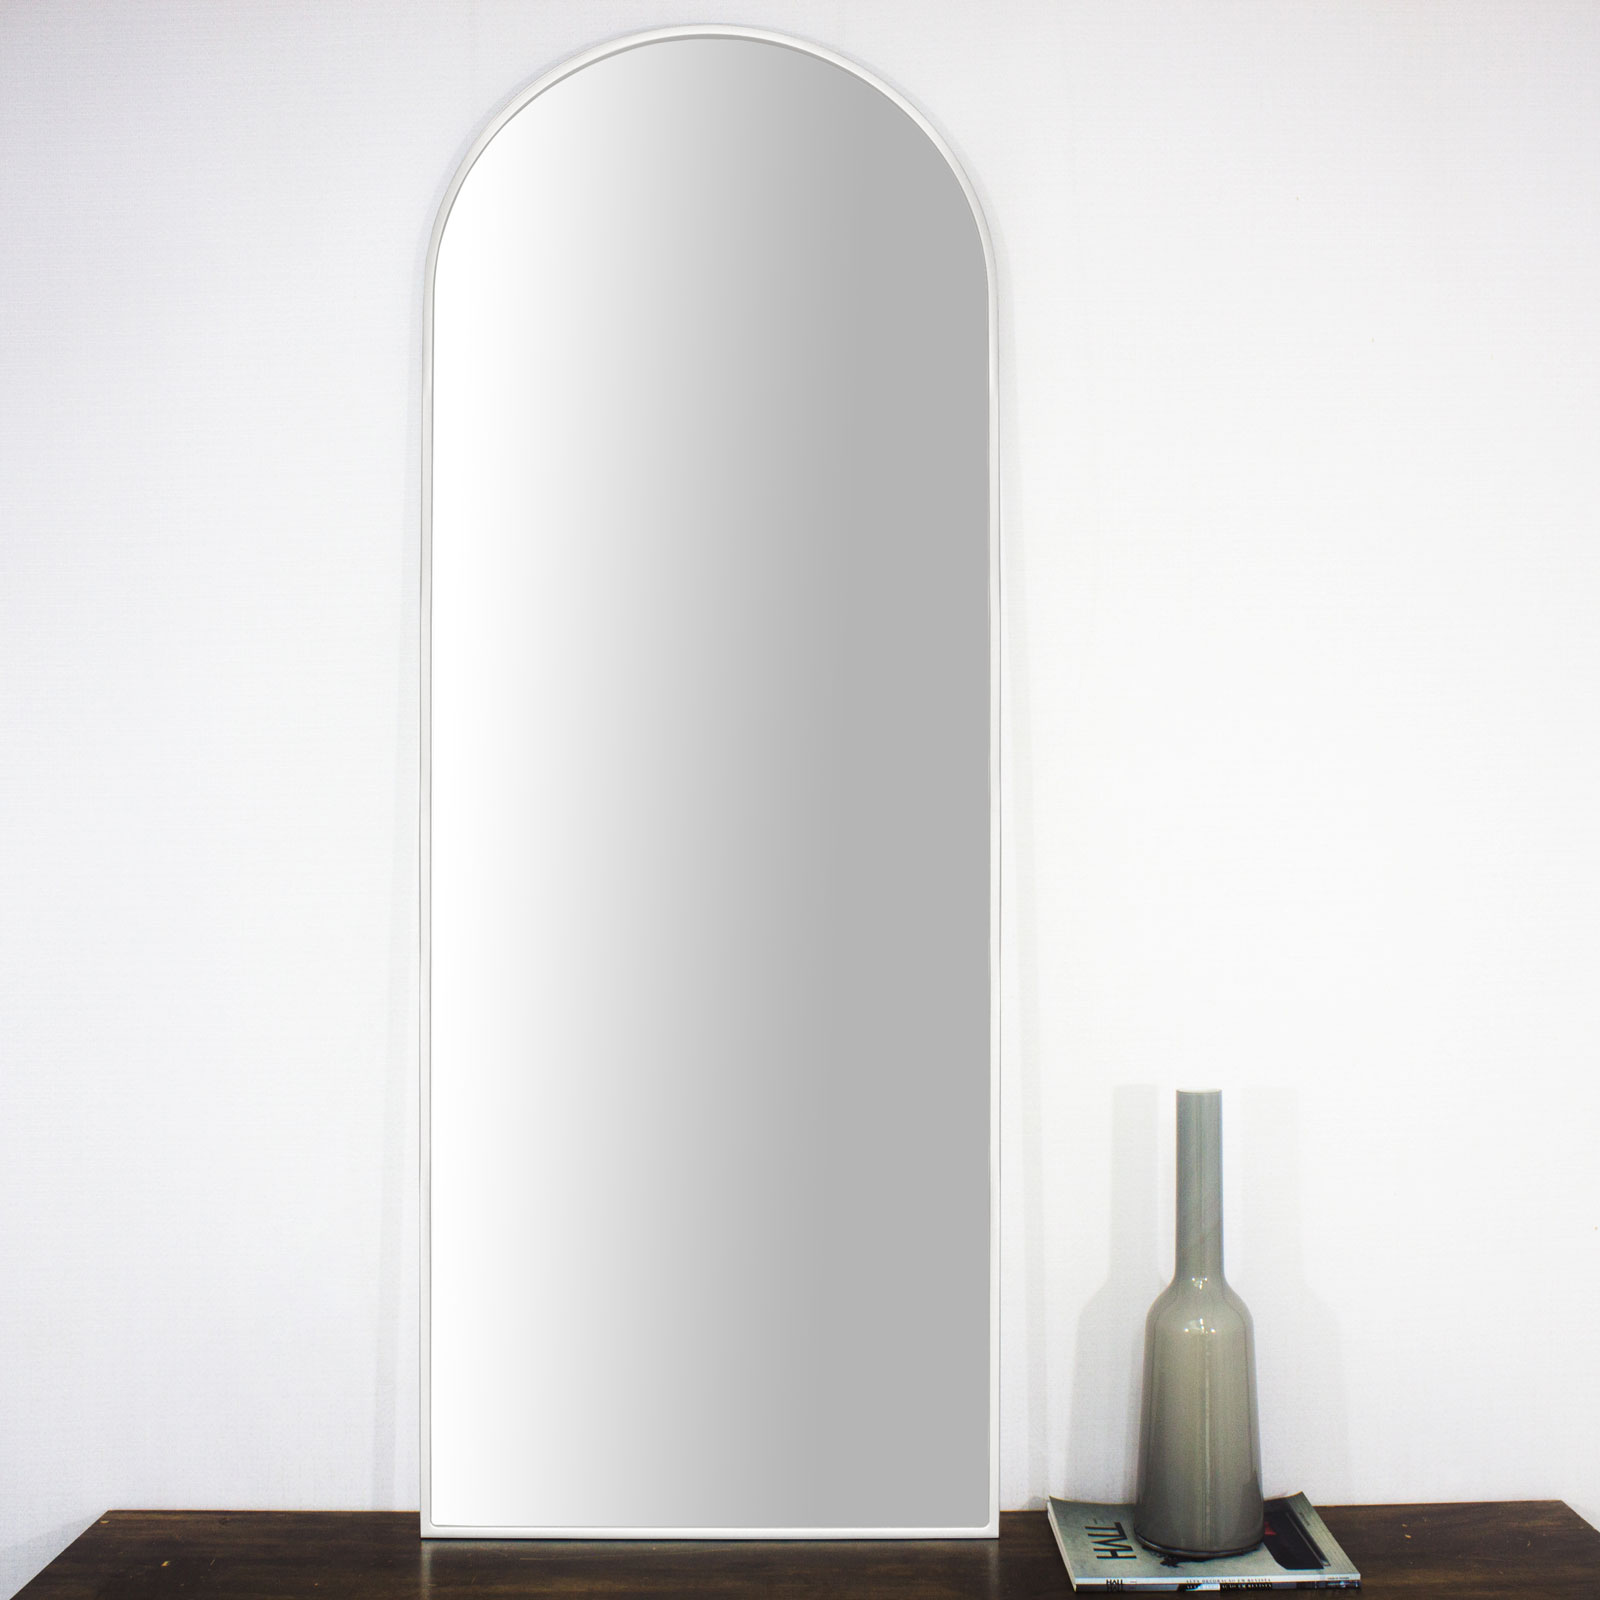 Moldura Semi Oval Janela Mdf Laqueada Branco Brilho para Espelhos Vrias Medidas